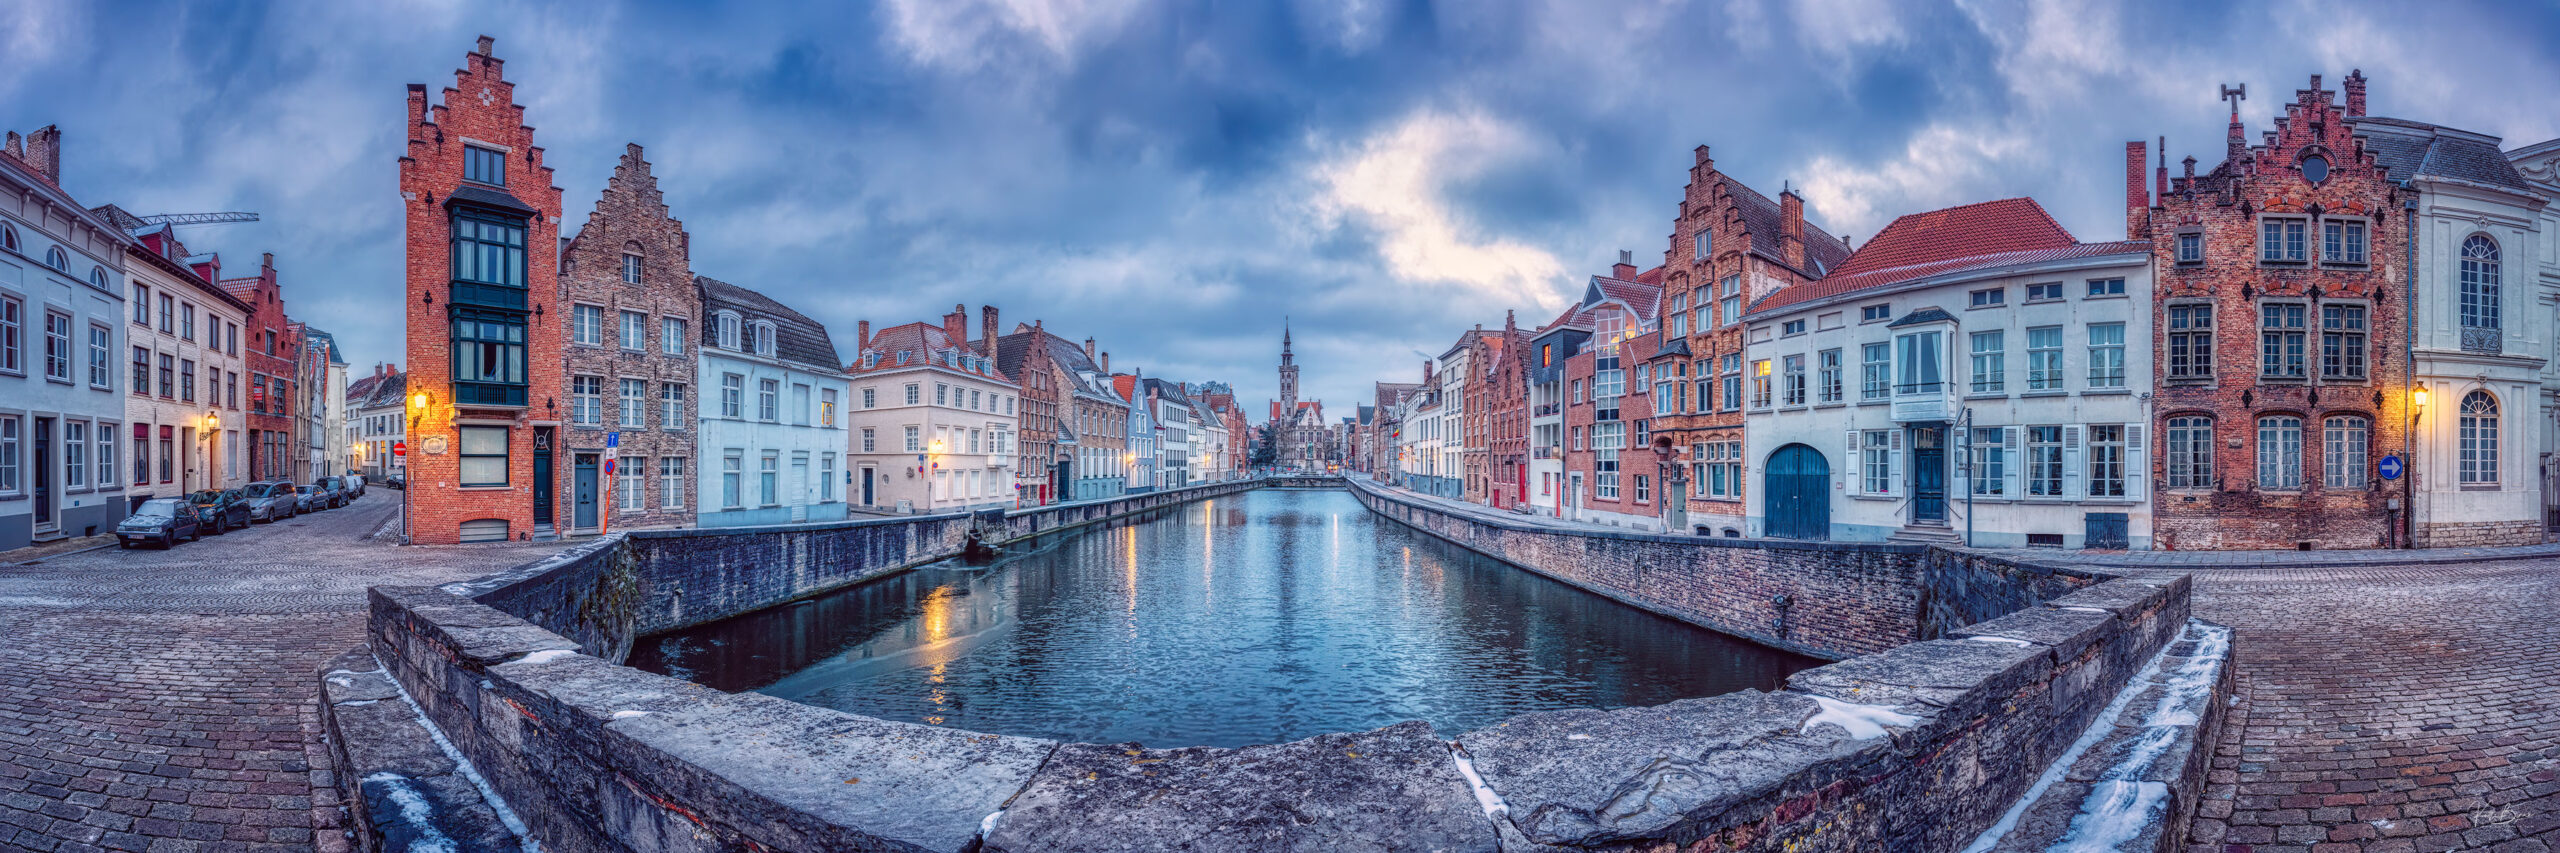 Brugge panoramic view